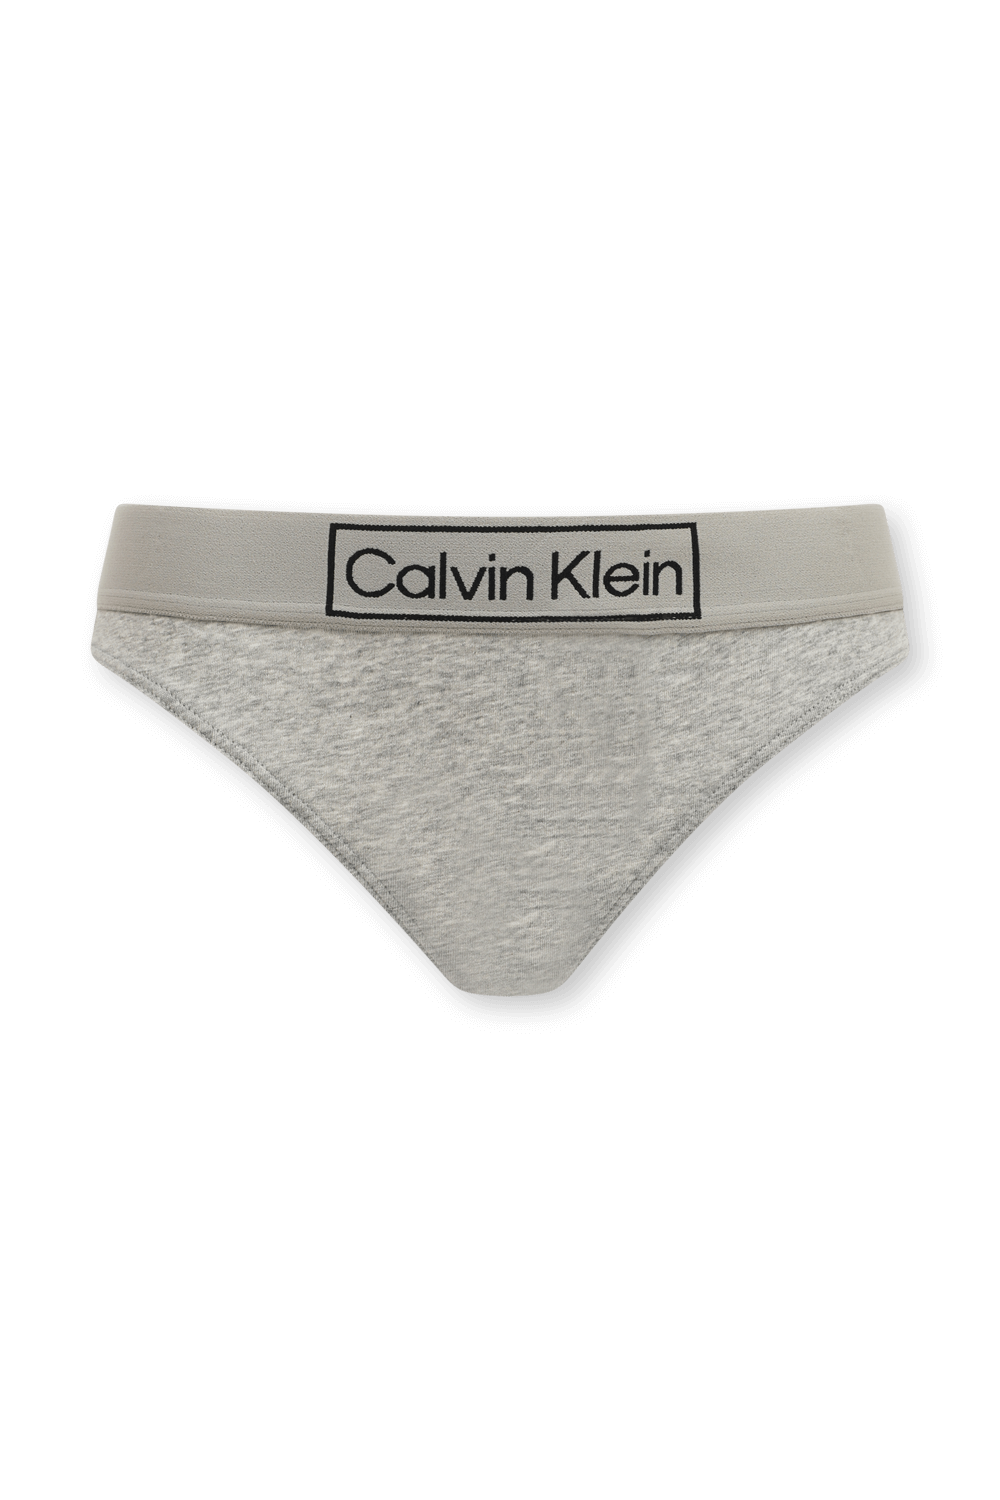 תחתוני חוטיני אפורים עם רצועת לוגו CALVIN KLEIN